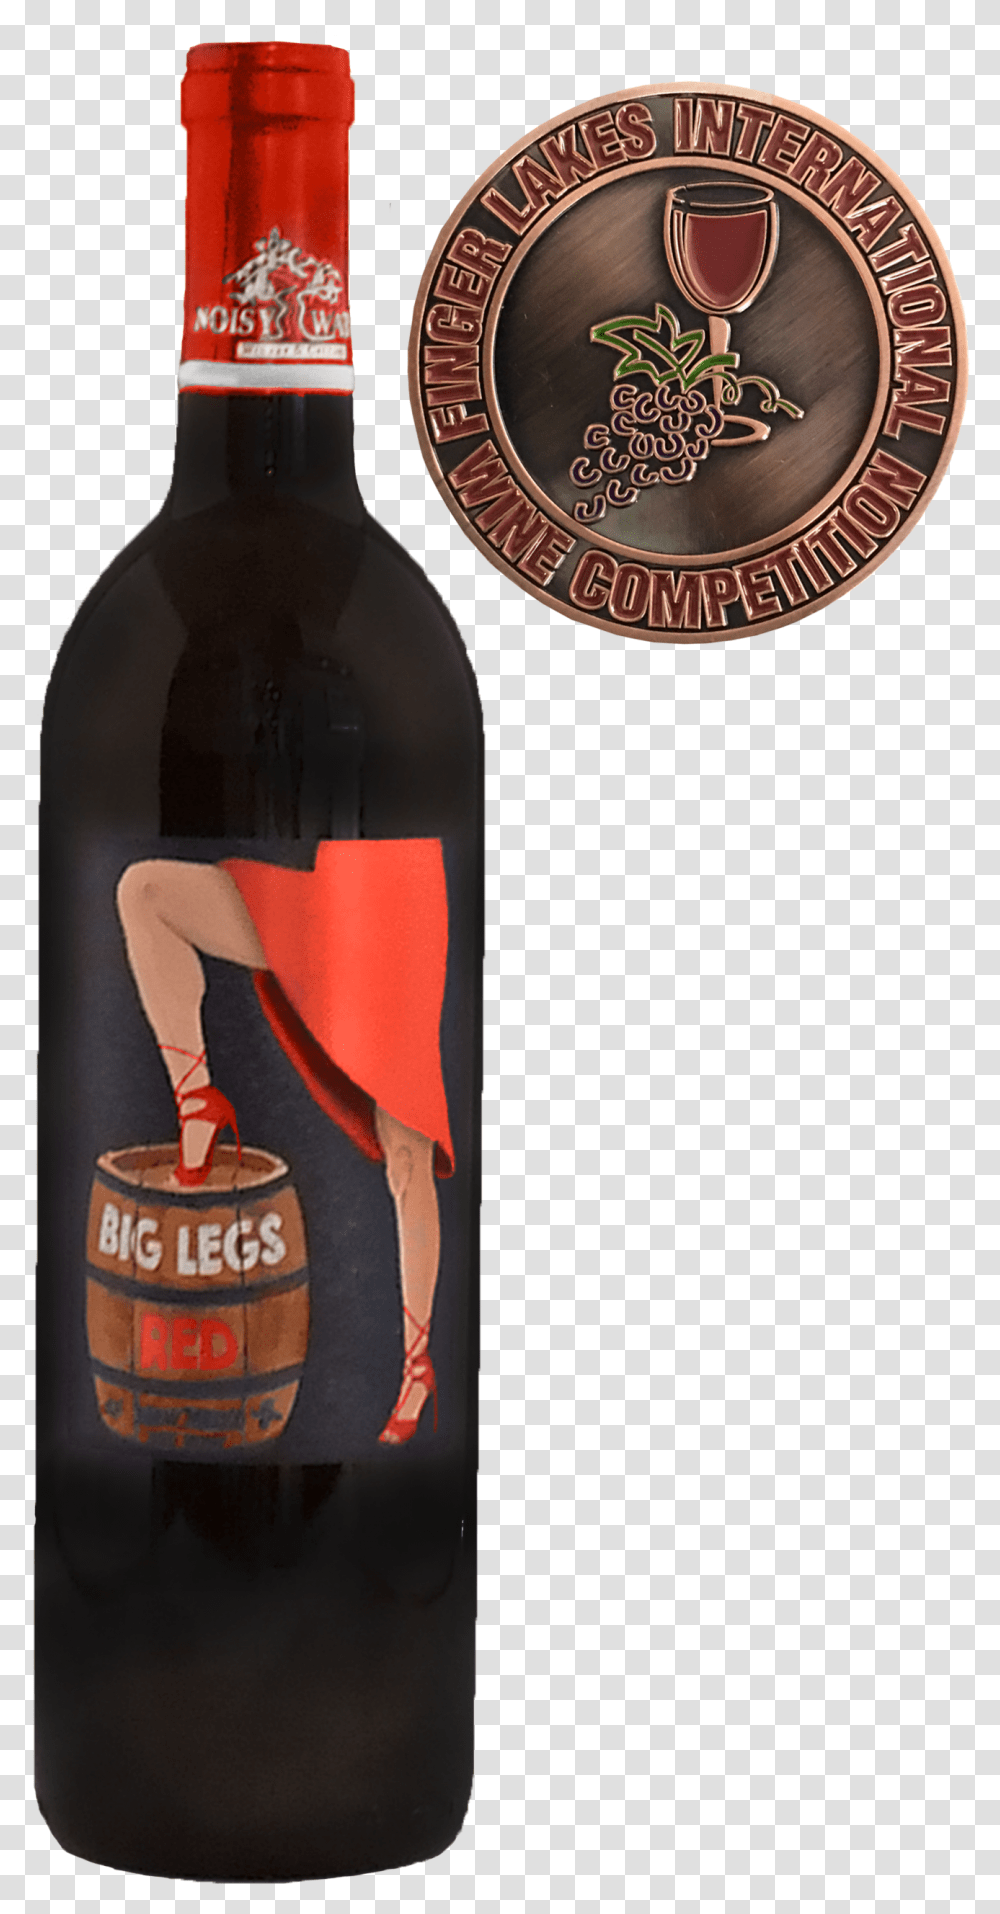 Big Legs Red Guinness, Bottle, Beverage, Drink, Alcohol Transparent Png